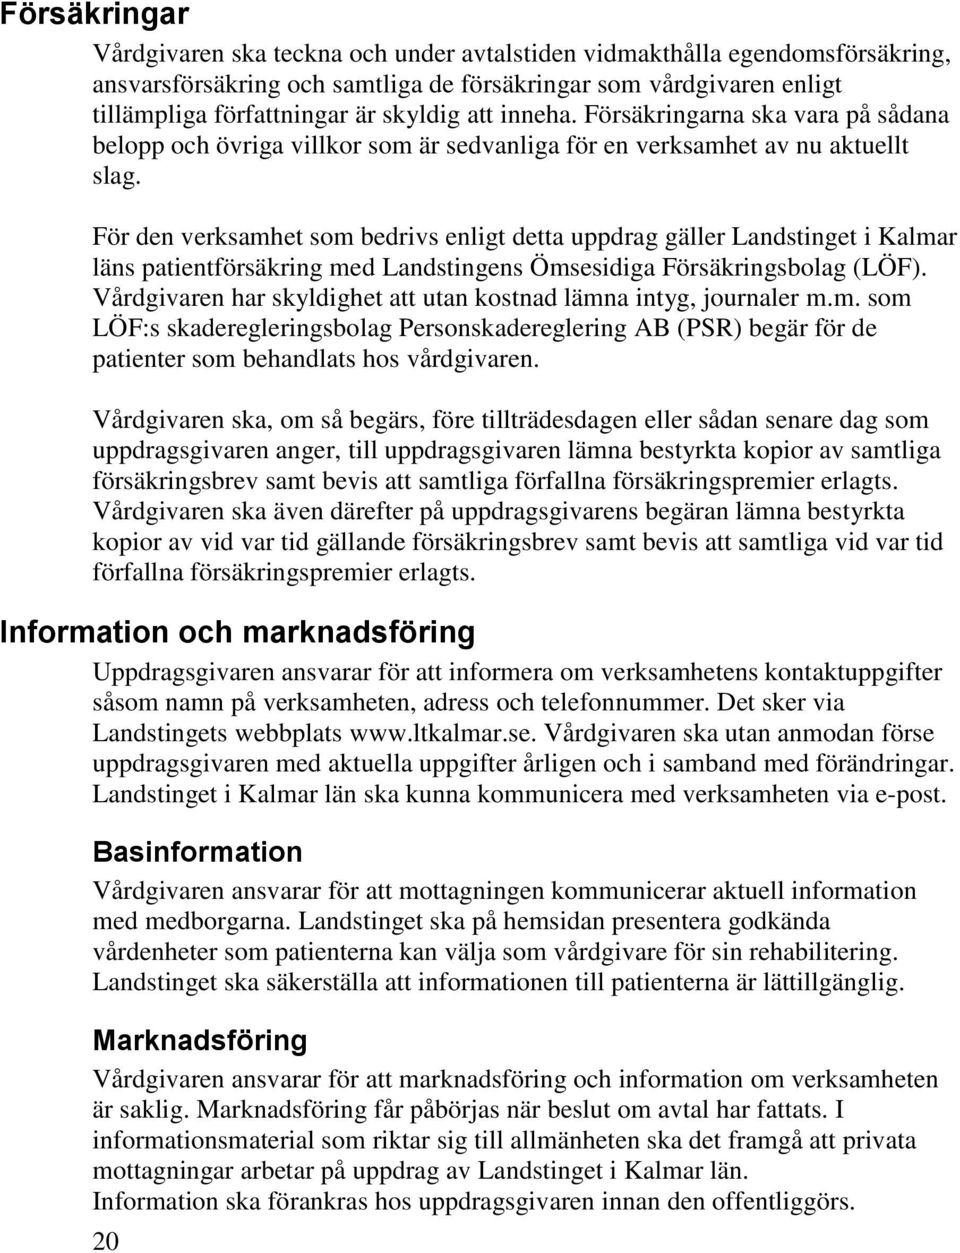 För den verksamhet som bedrivs enligt detta uppdrag gäller Landstinget i Kalmar läns patientförsäkring med Landstingens Ömsesidiga Försäkringsbolag (LÖF).